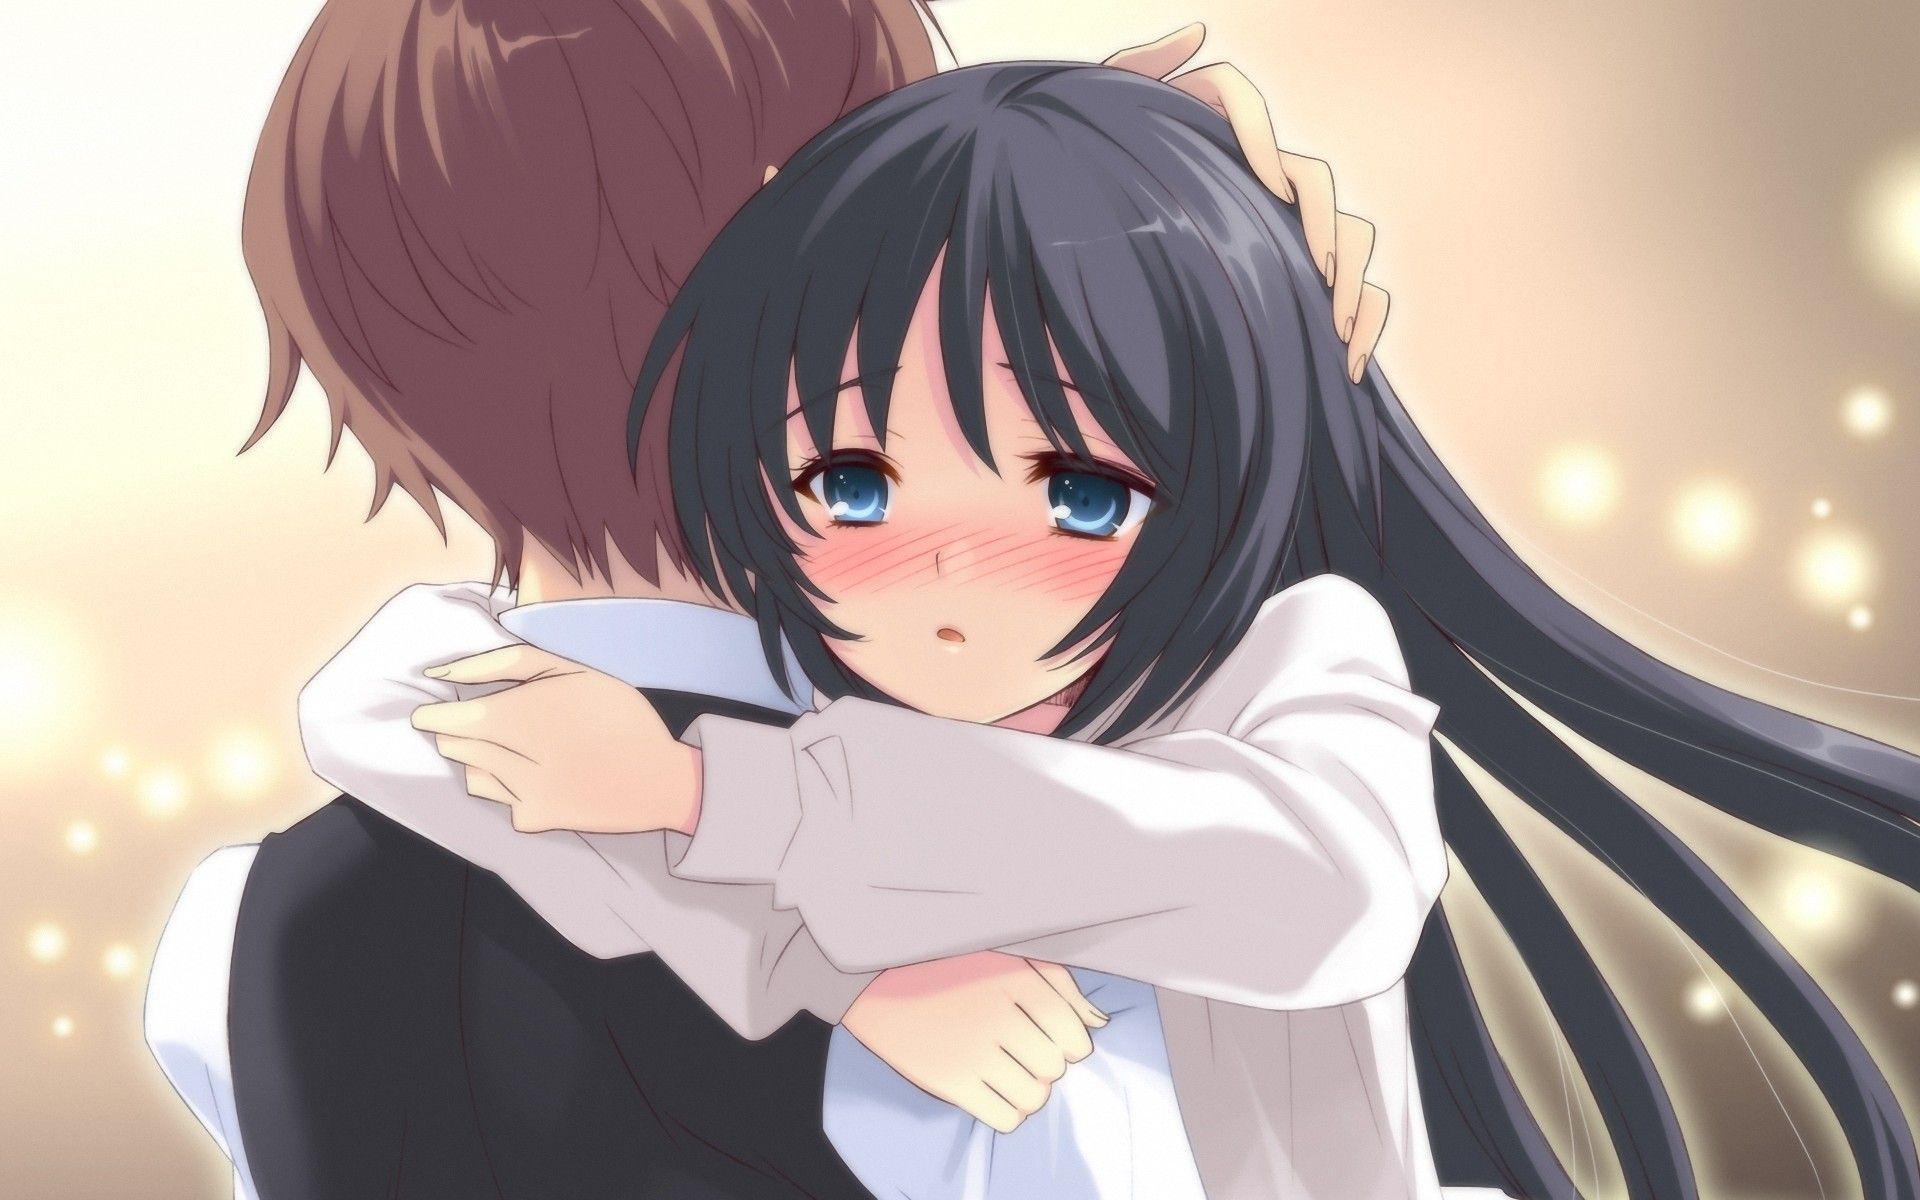 Hug Anime GIFs | Tenor